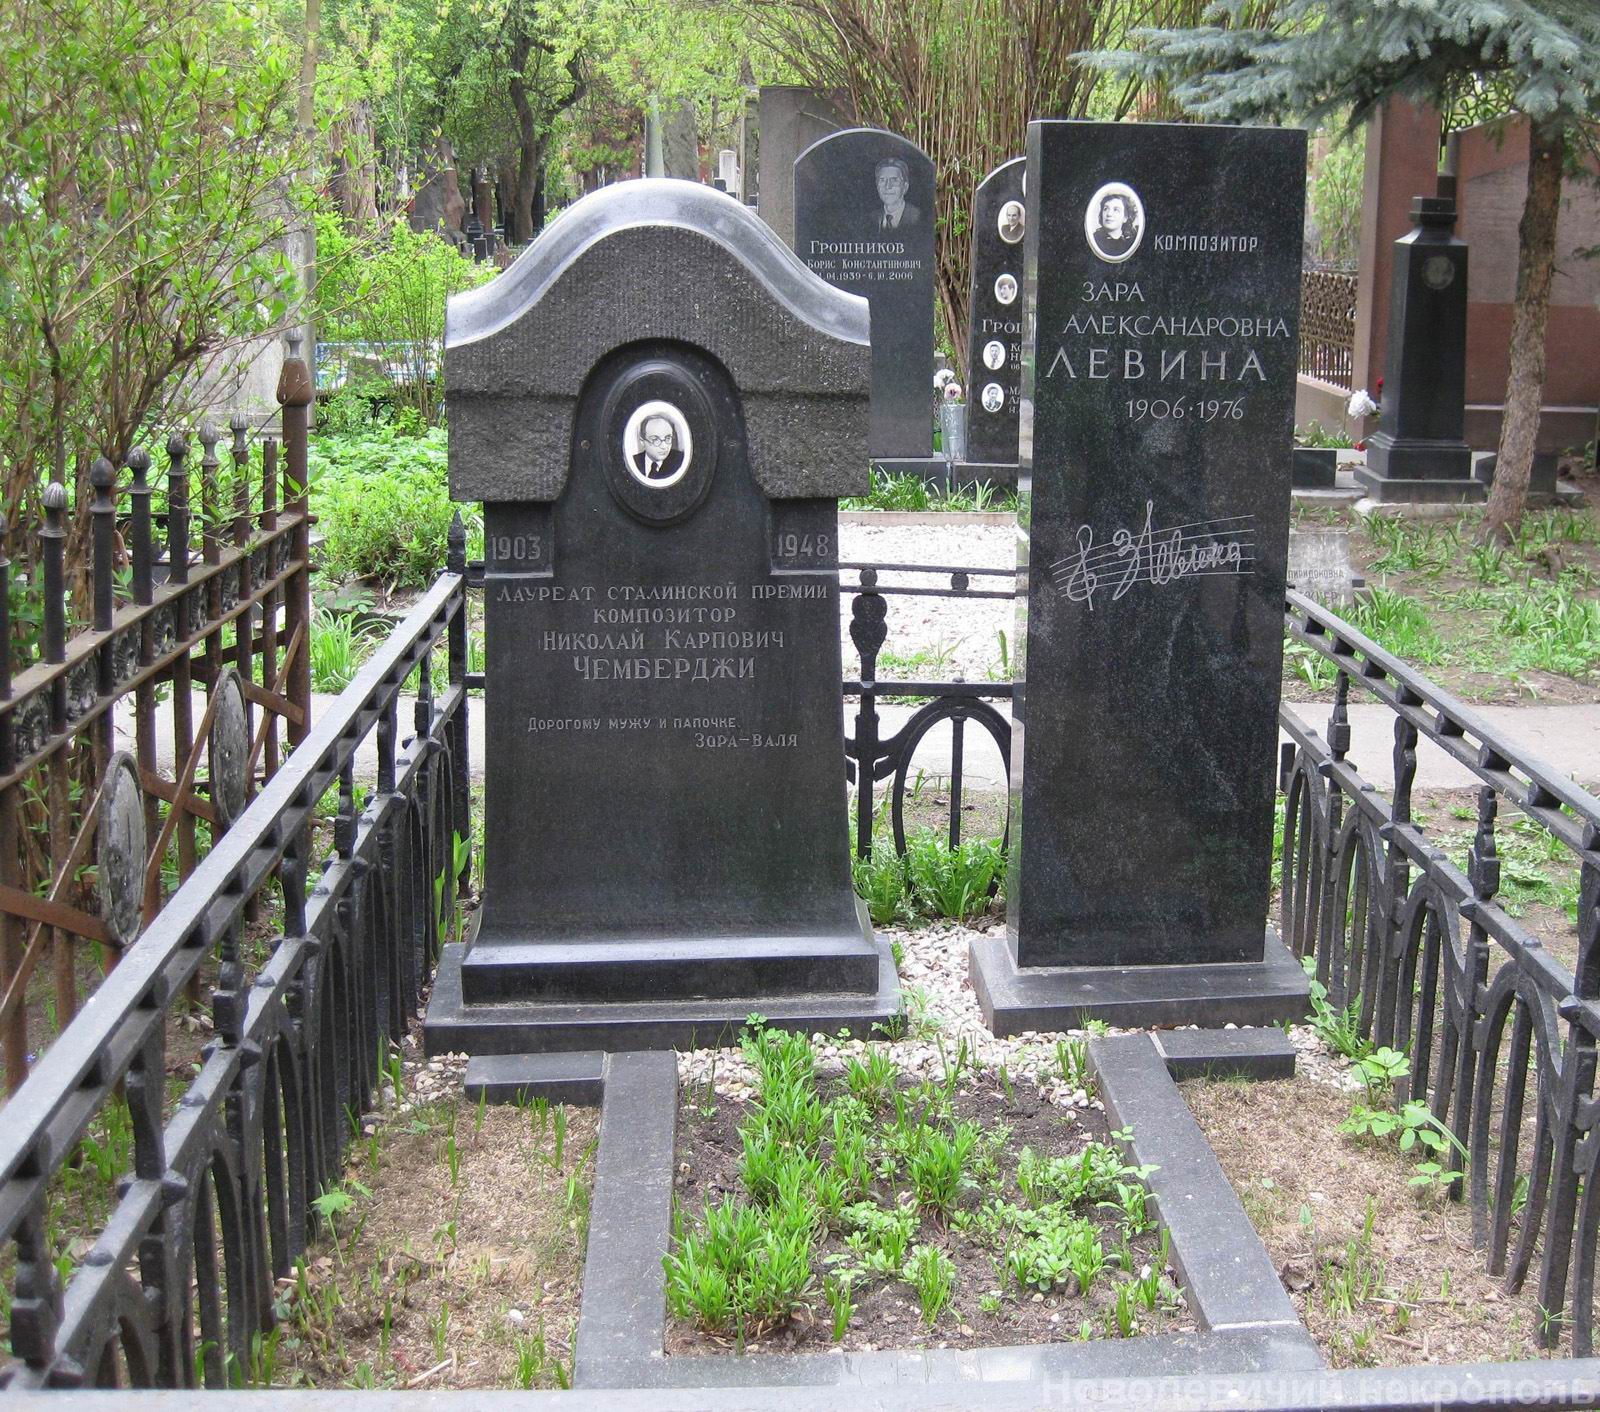 Памятник на могиле Чемберджи Н.К. (1903-1948), на Новодевичьем кладбище (3-62-18).